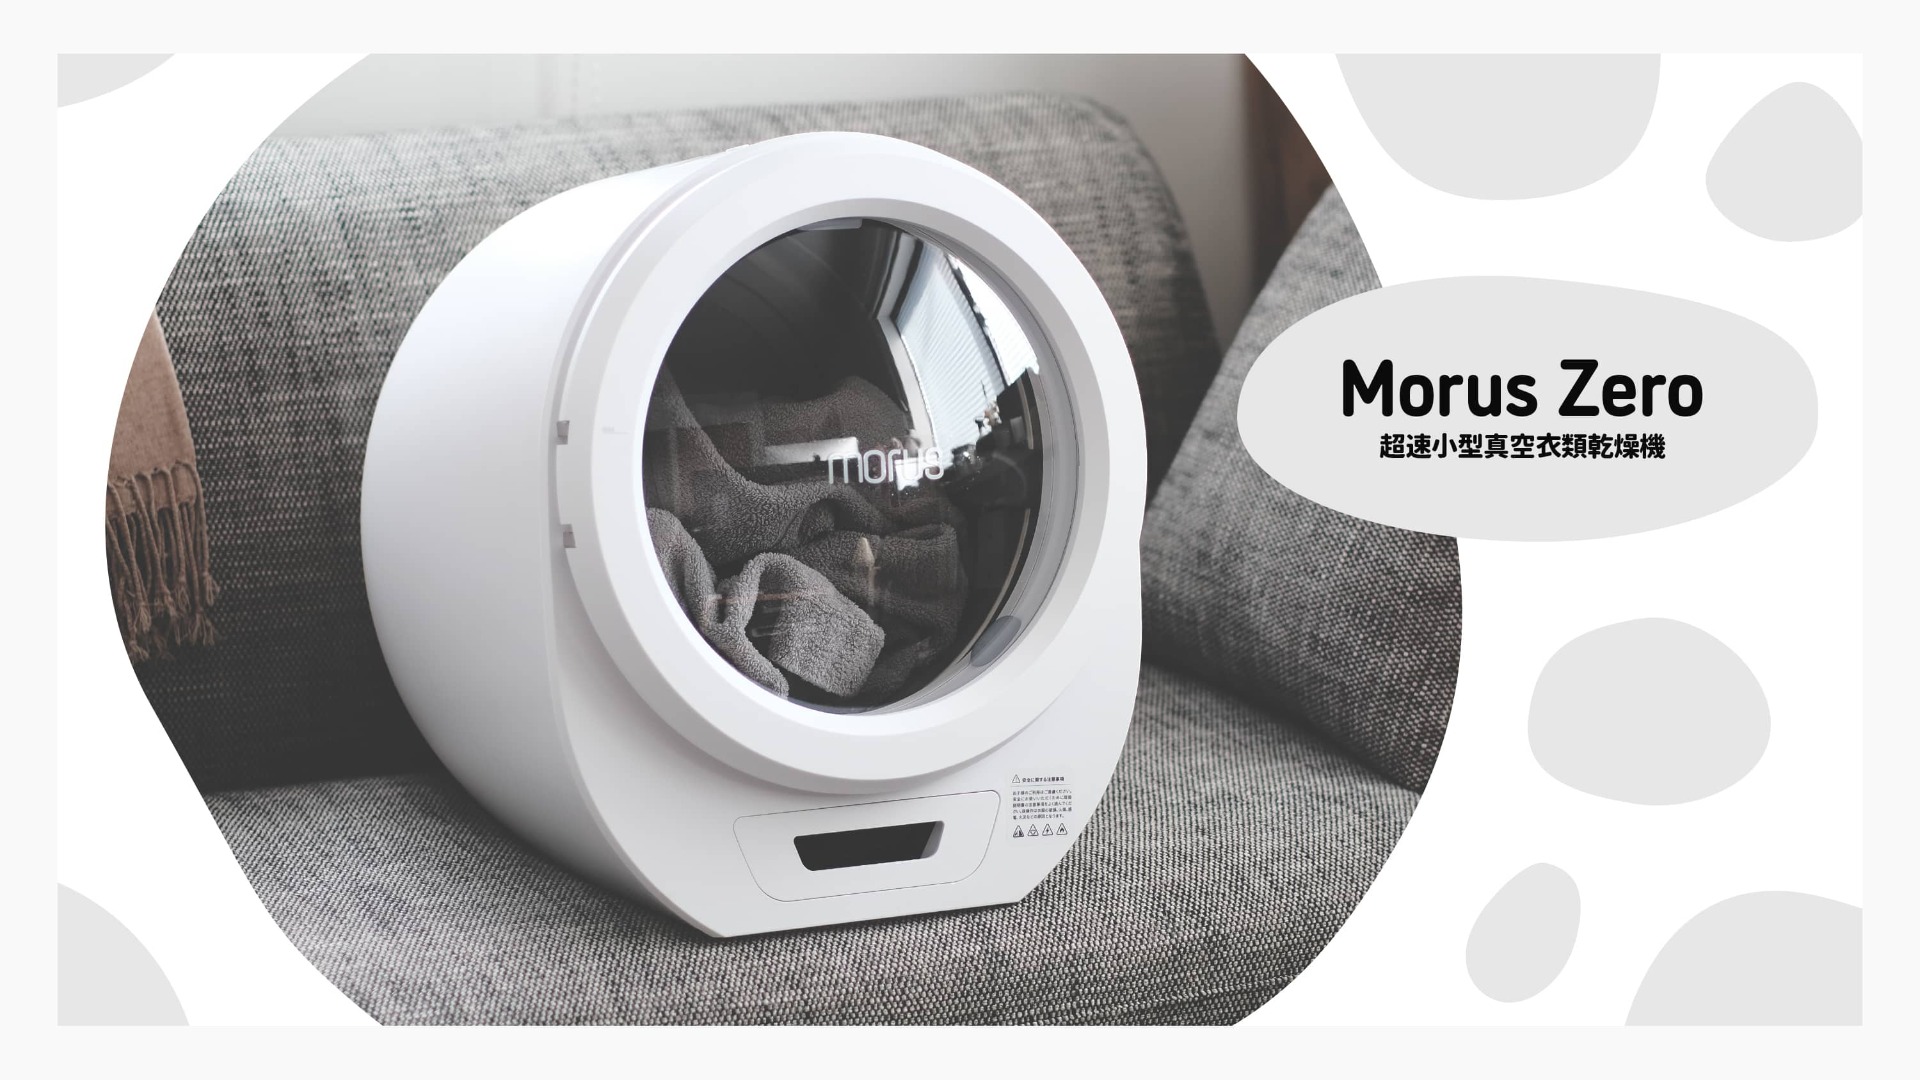 話題の小型衣類乾燥機「Morus Zero」は一人暮らしにちょうどいい